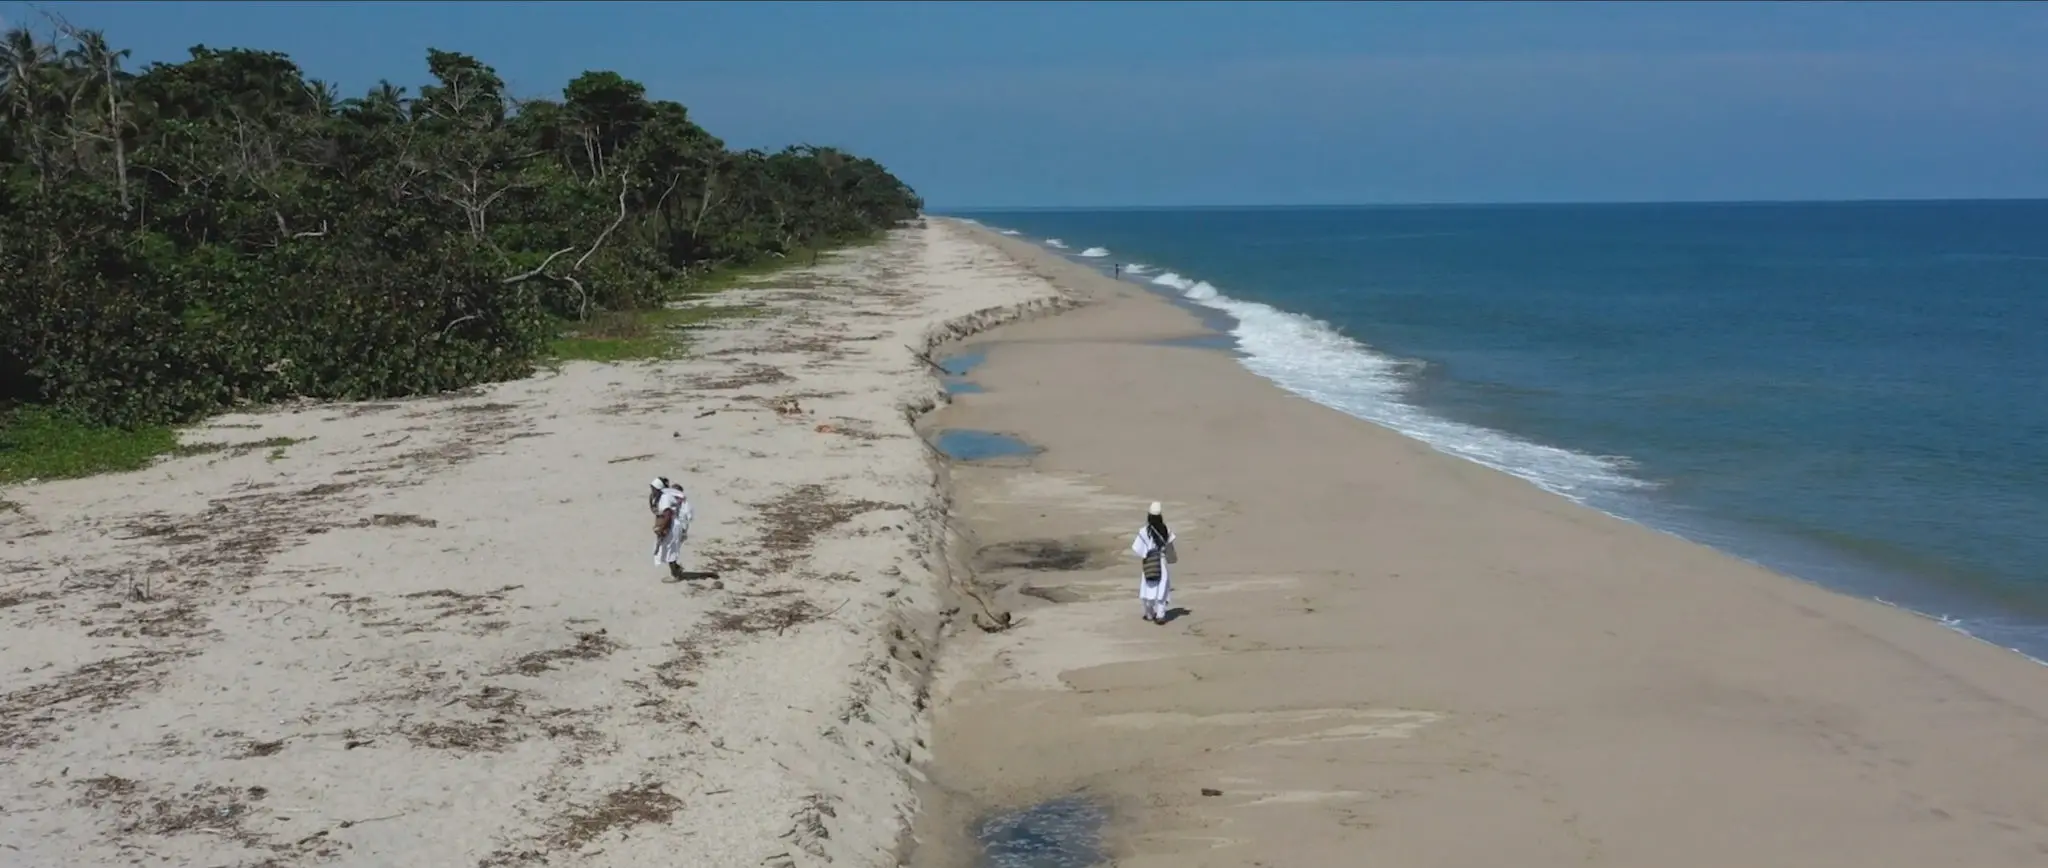 Indigenous people walk alongside the beach